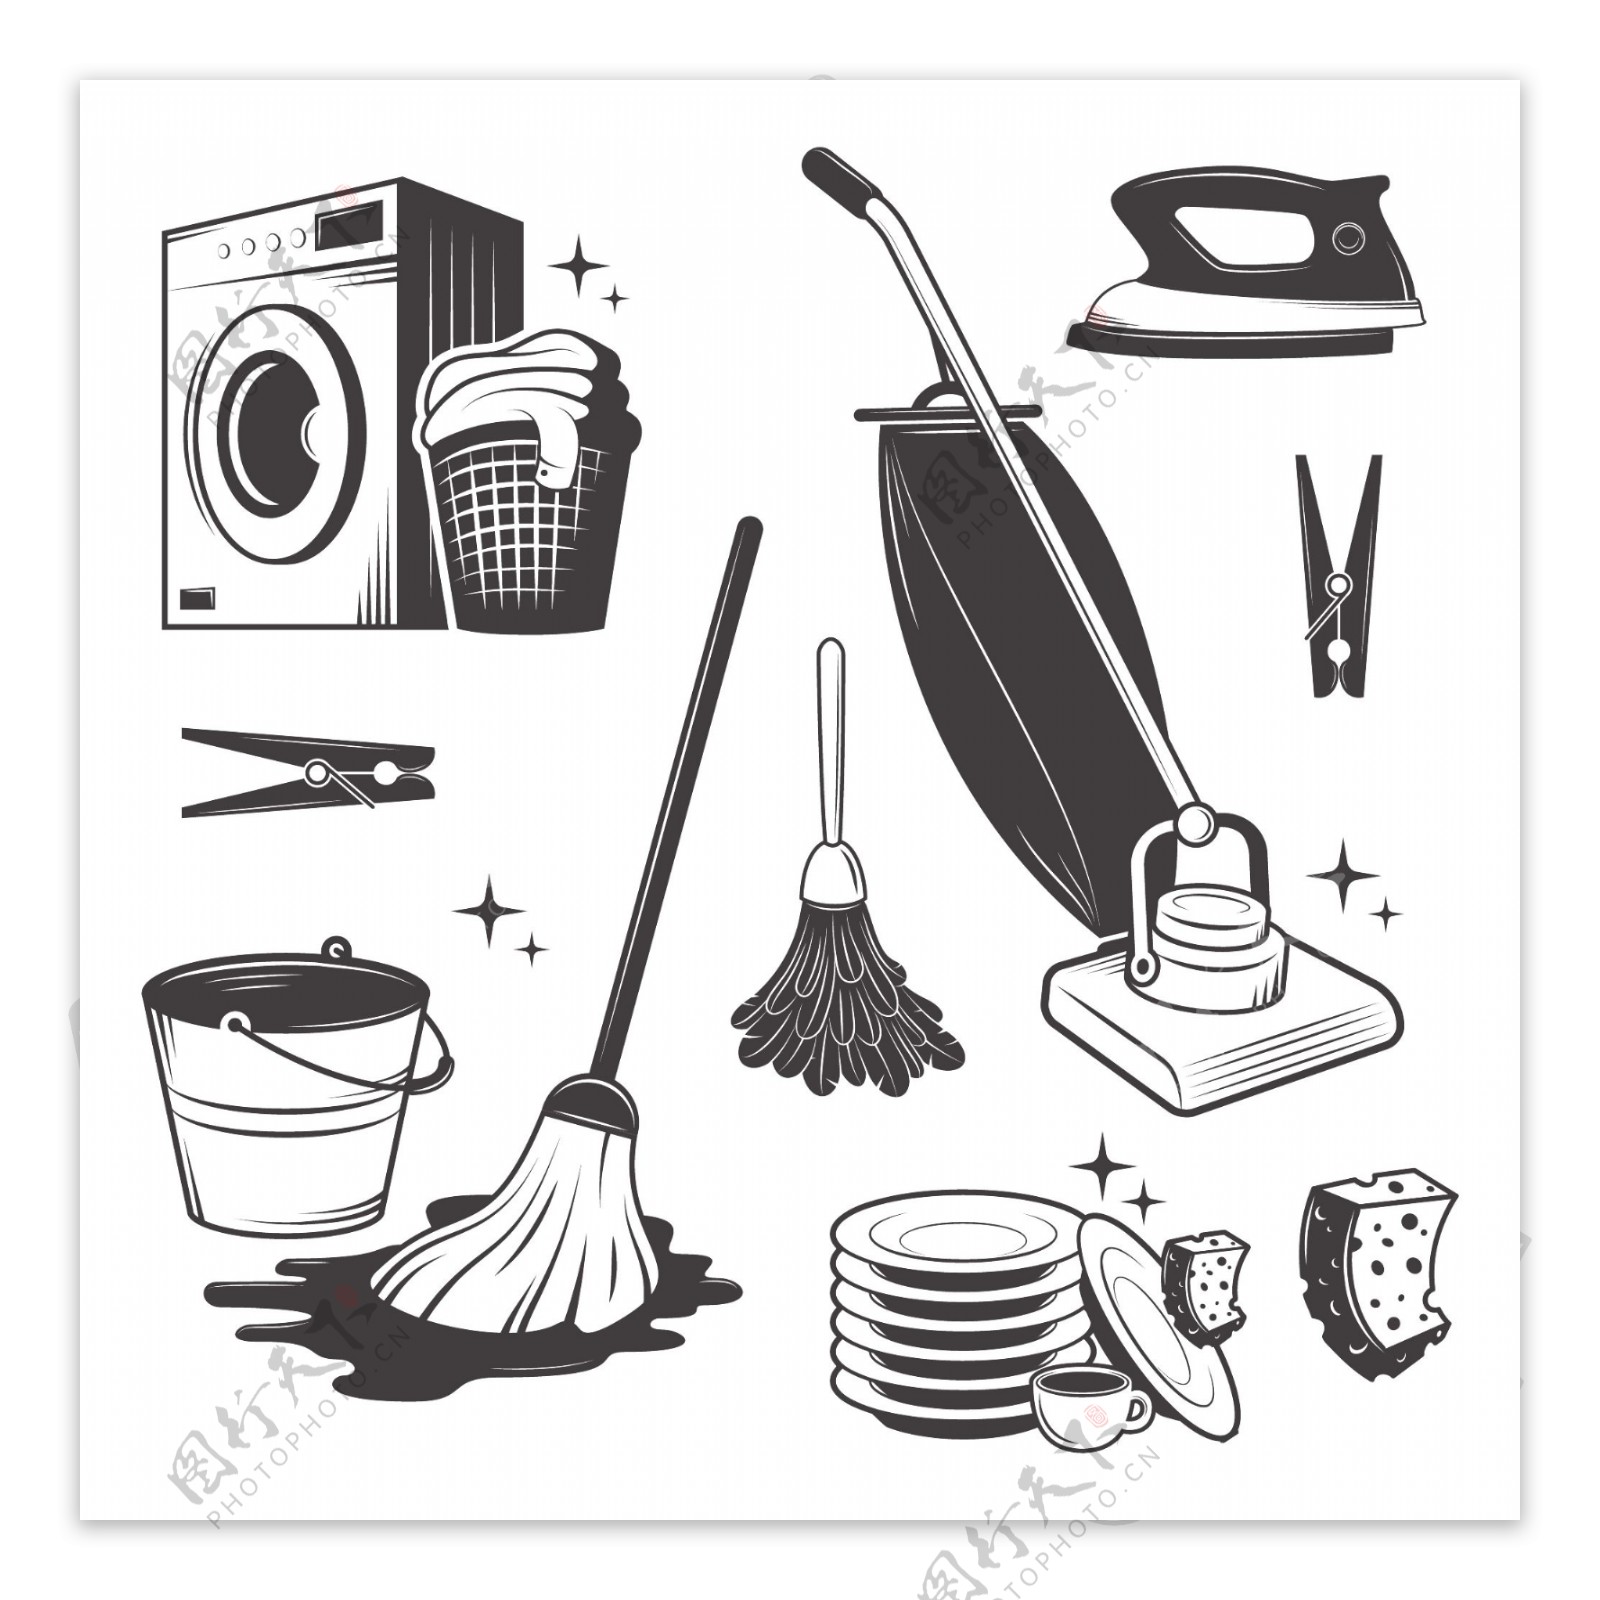 7款家庭清洁工具设计矢量素材图片